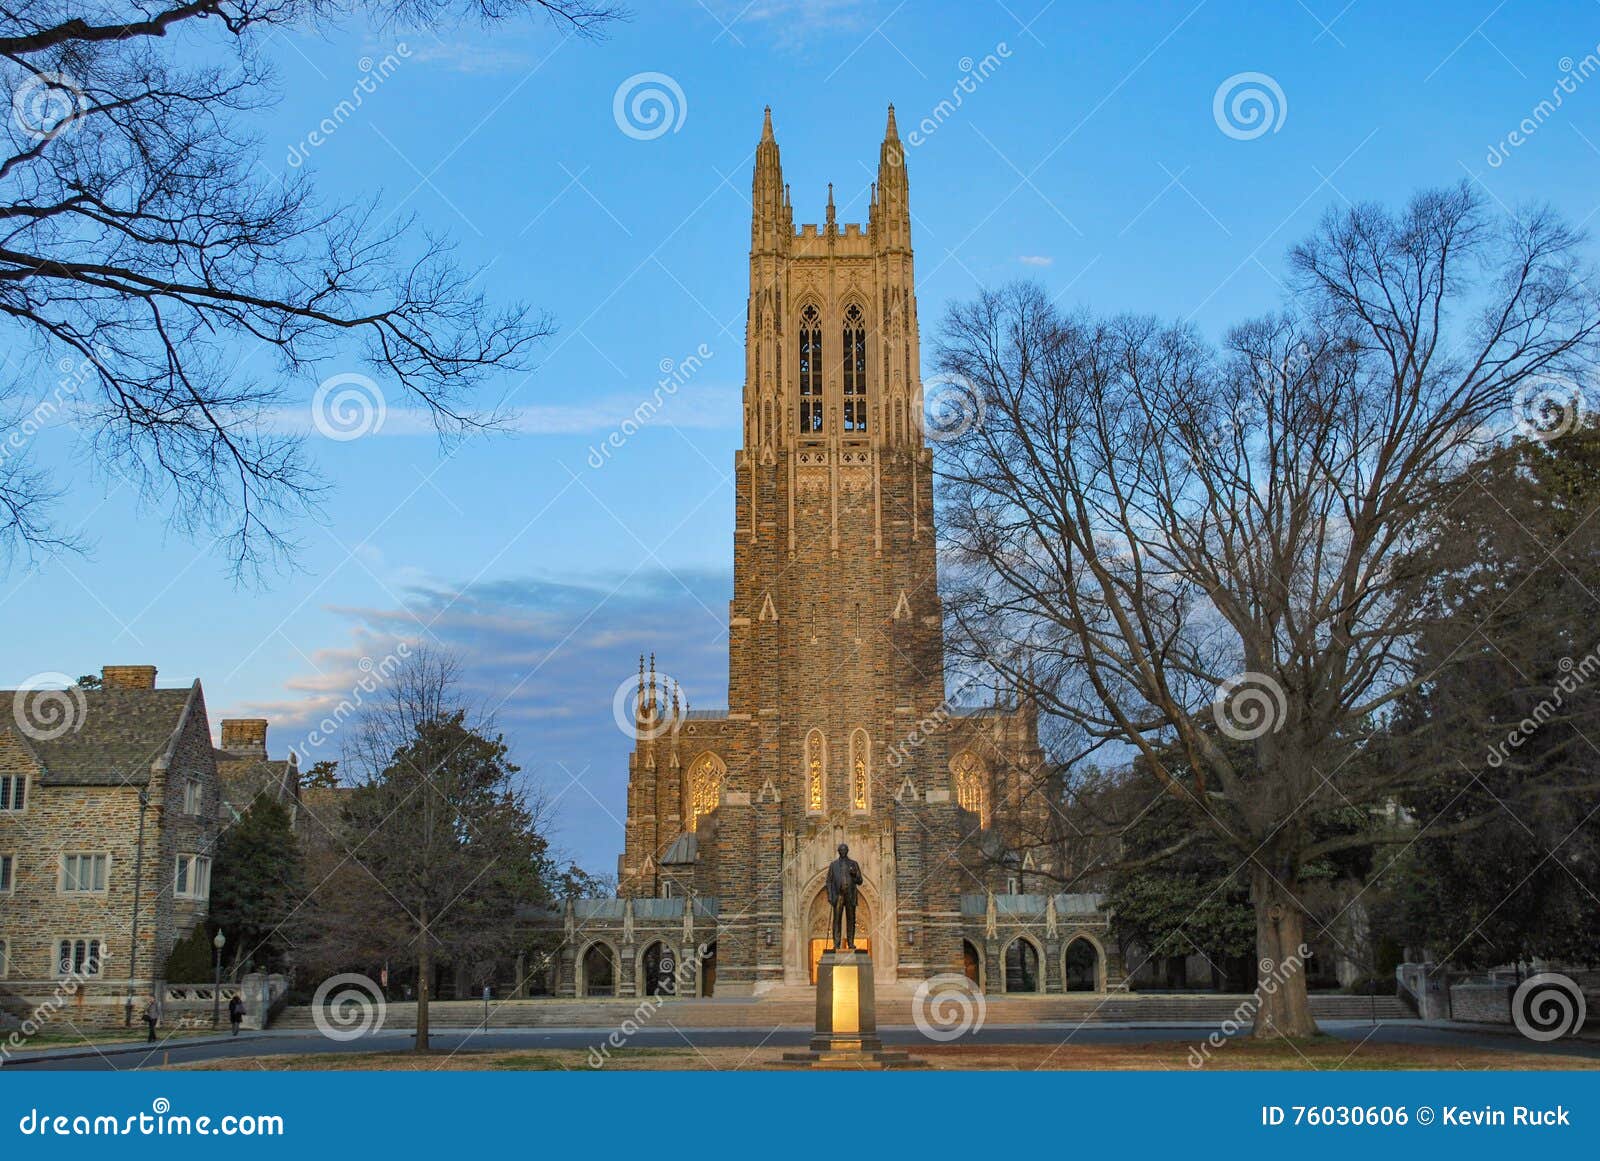 Duke University on Twitter Wallpaper Wednesday  DukeFall   httpstco5ctMVAwMVZ  Twitter